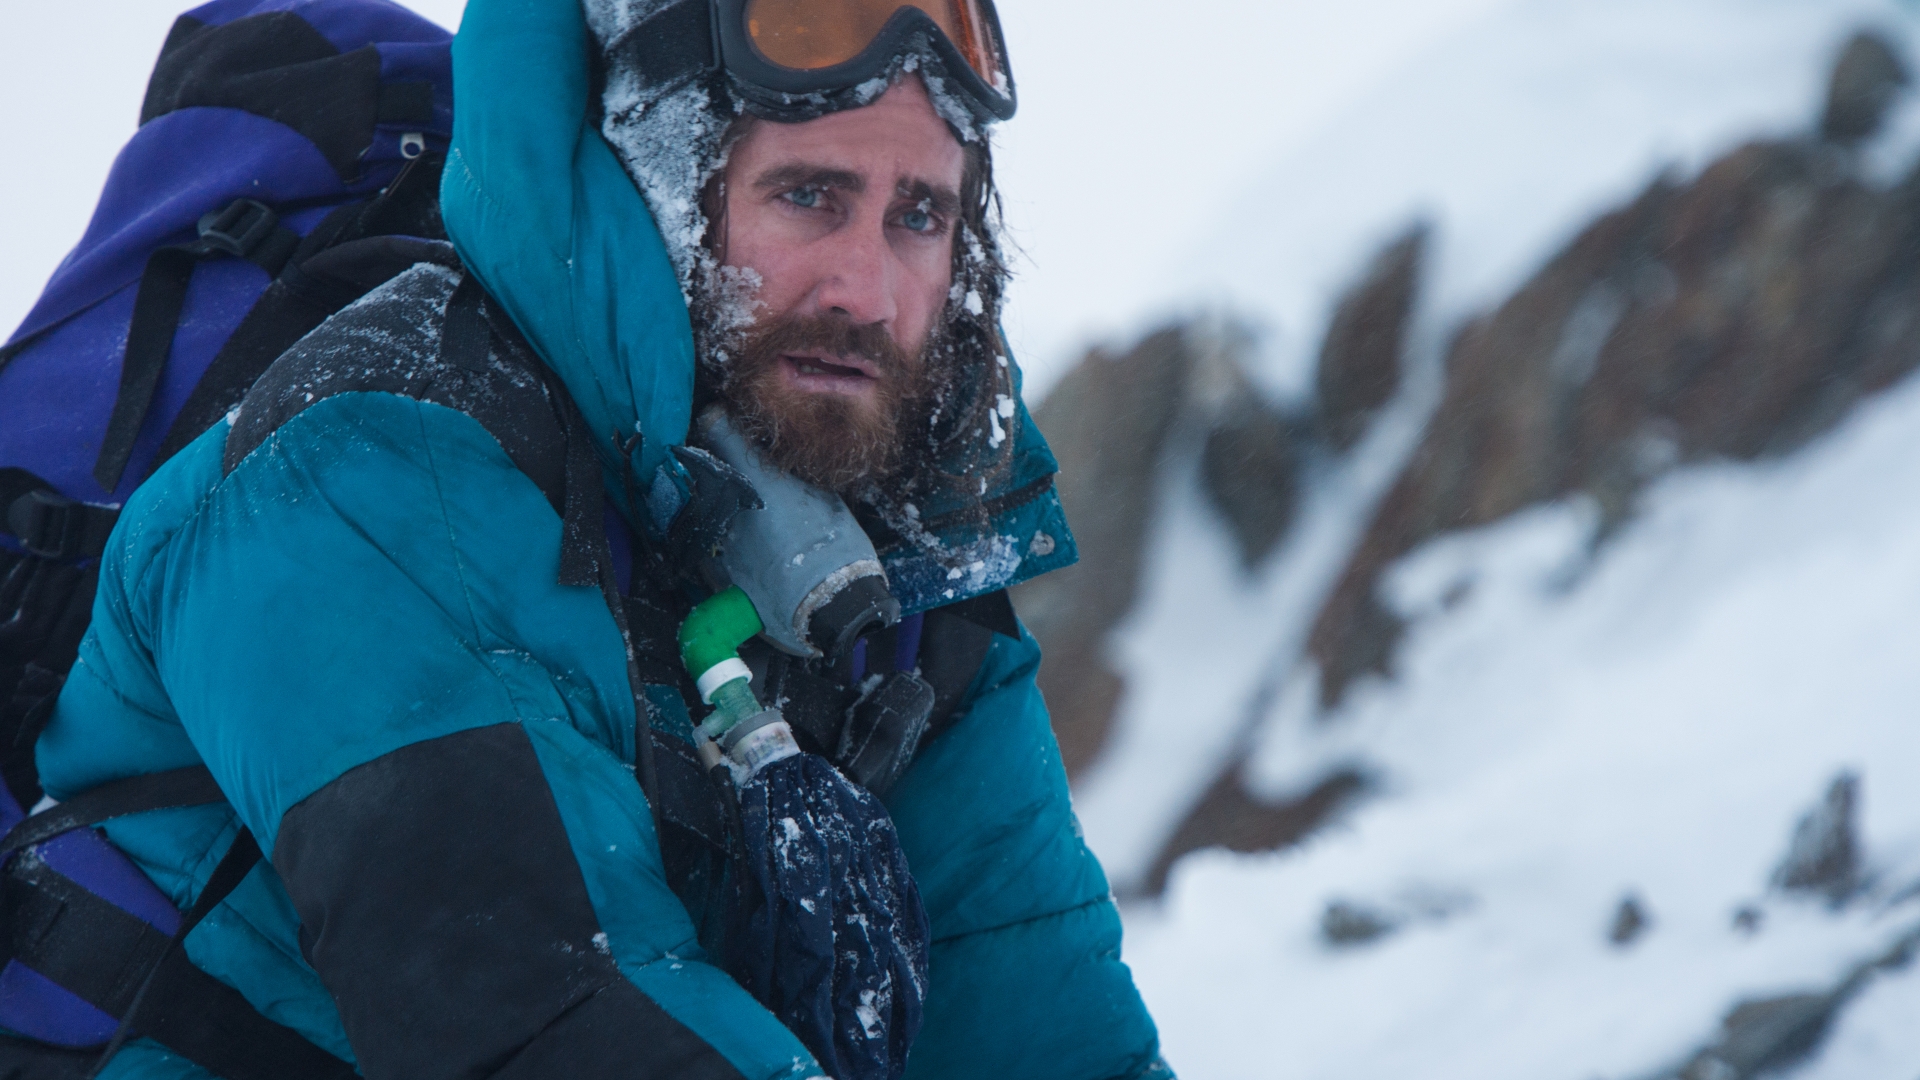 Everest Movie Jake Gyllenhaal for 1920 x 1080 HDTV 1080p resolution